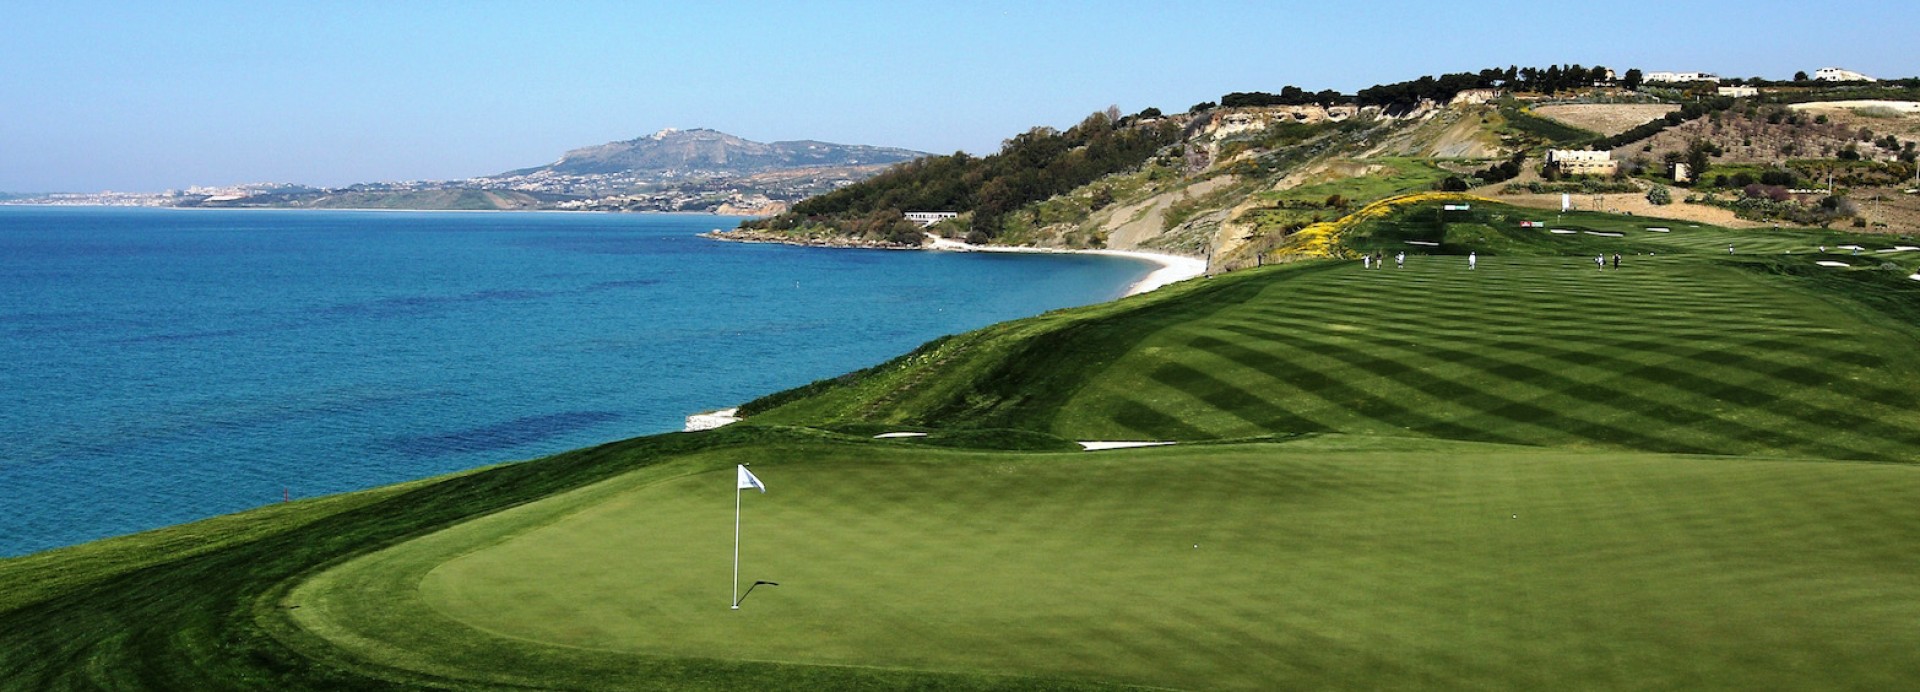 Verdura Golf Course  | Golfové zájezdy, golfová dovolená, luxusní golf